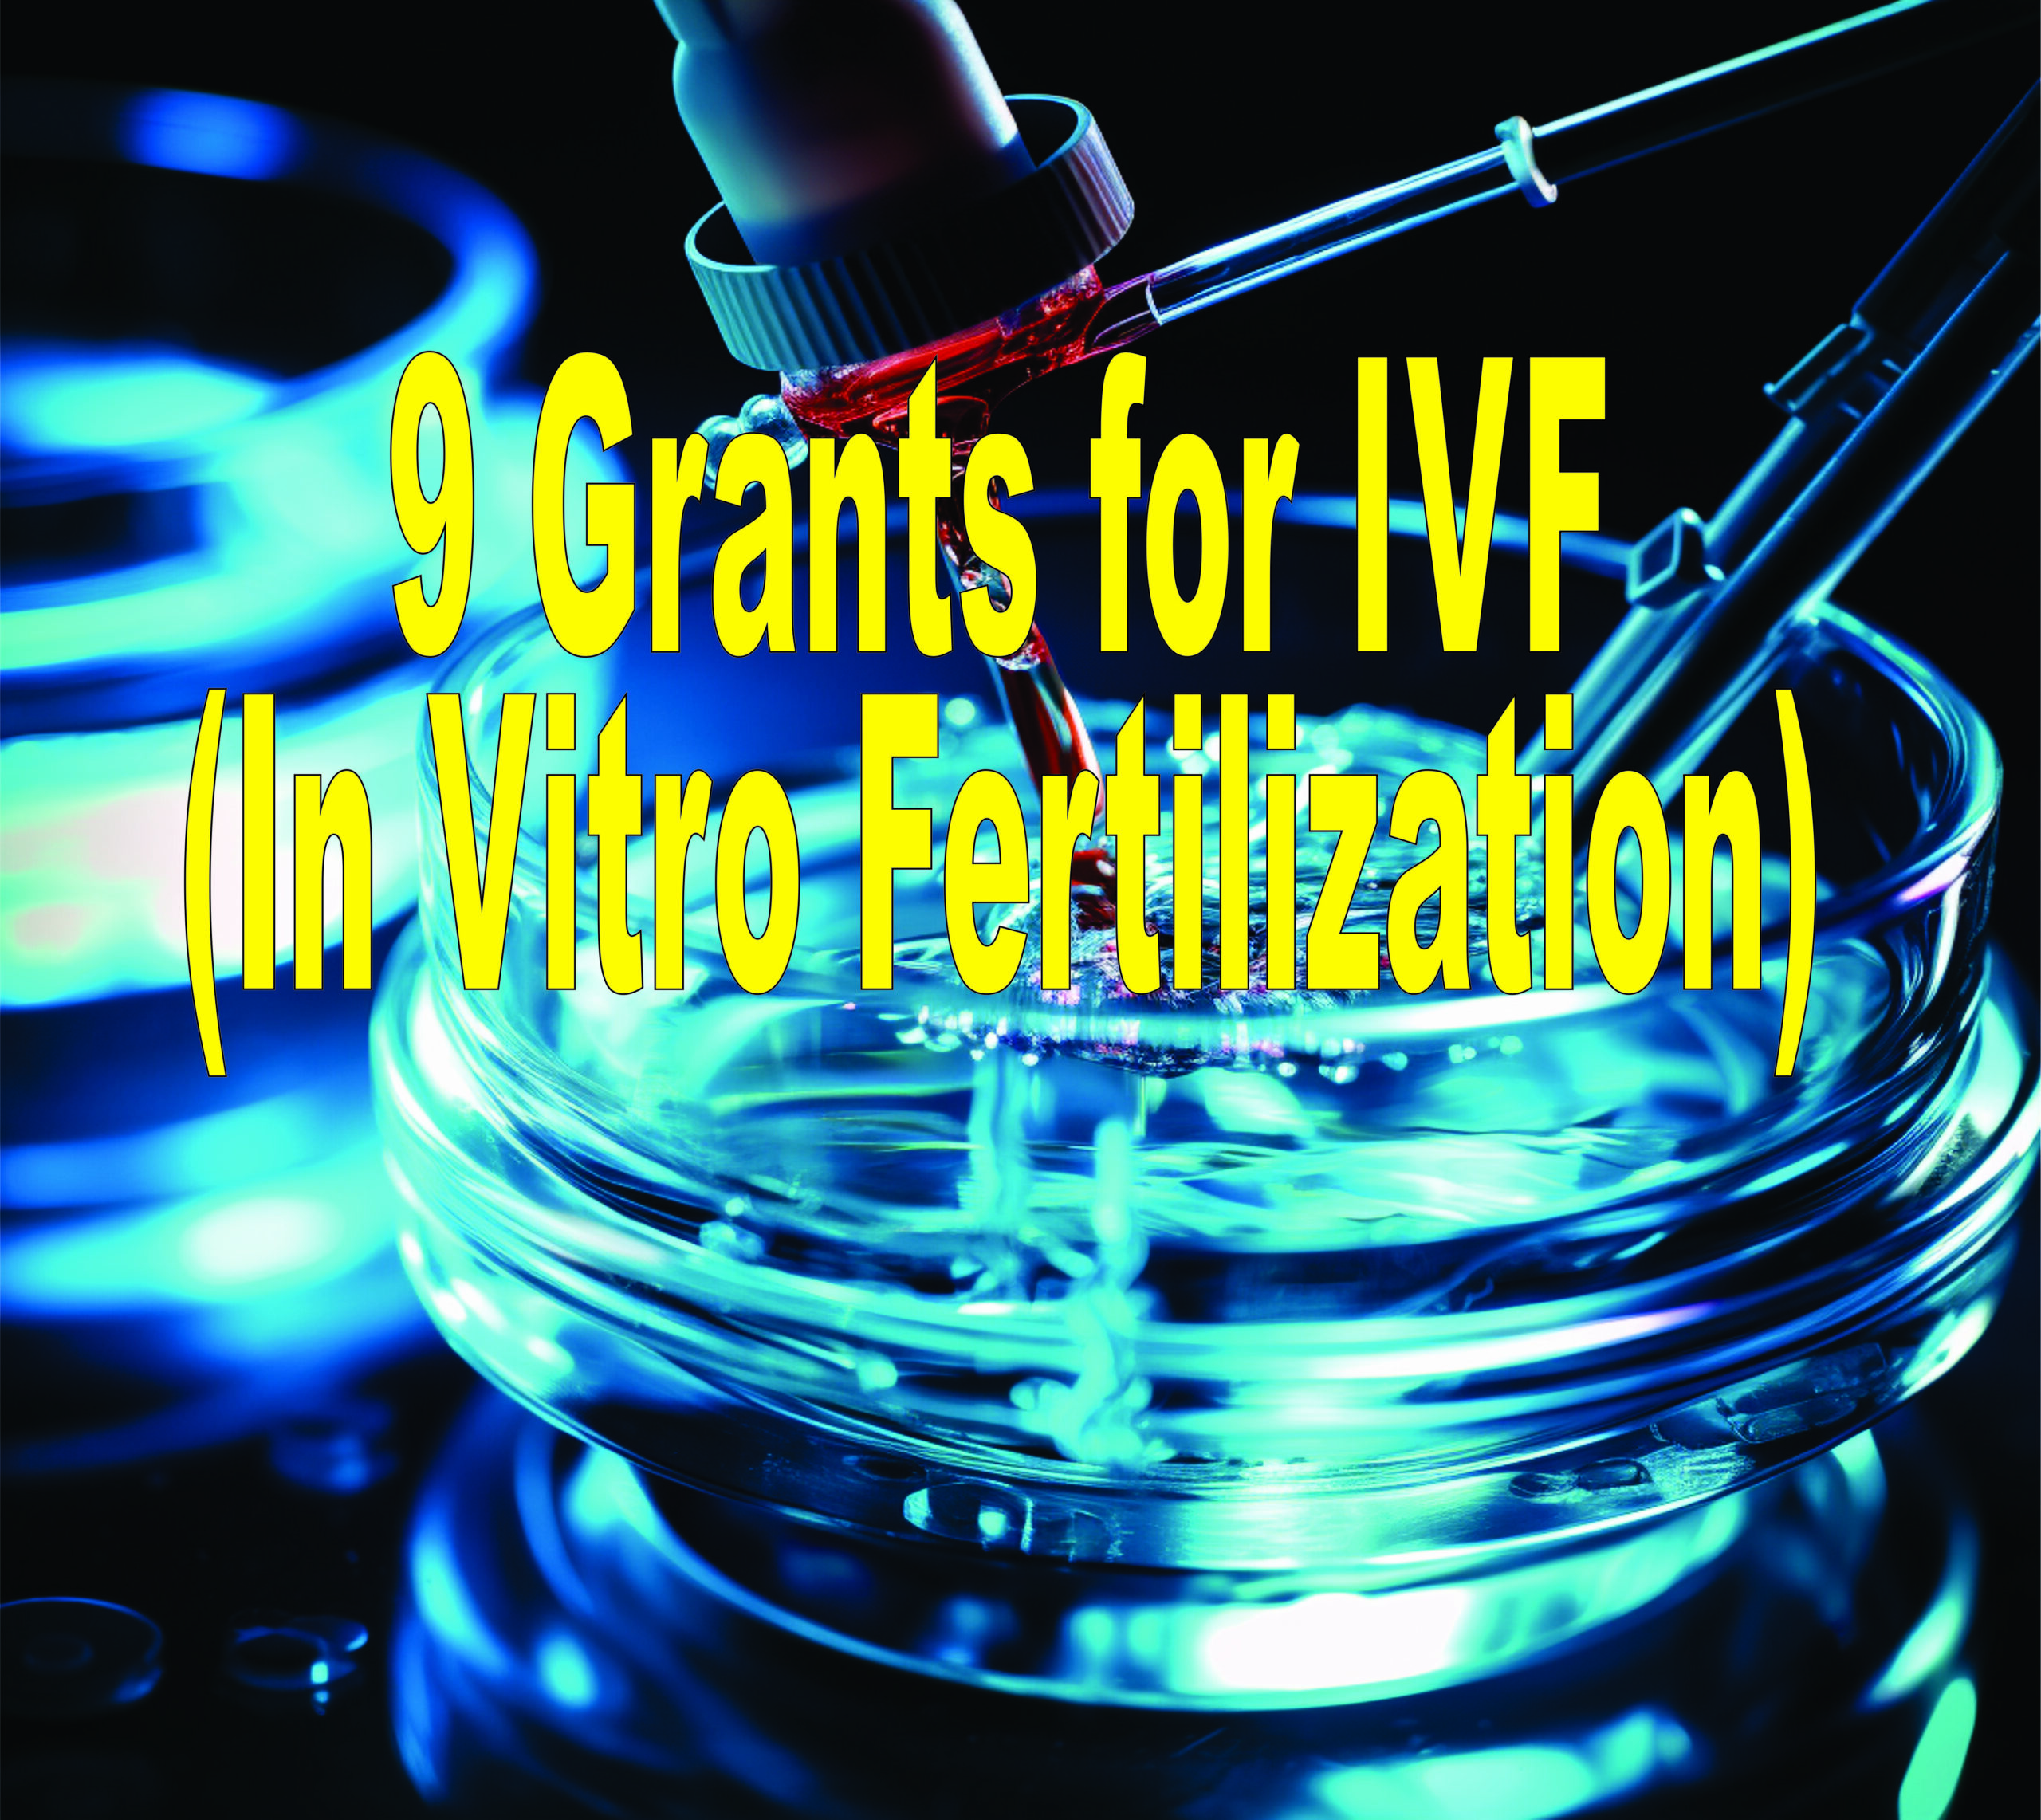 9 Grants For Ivf (in Vitro Fertilization)